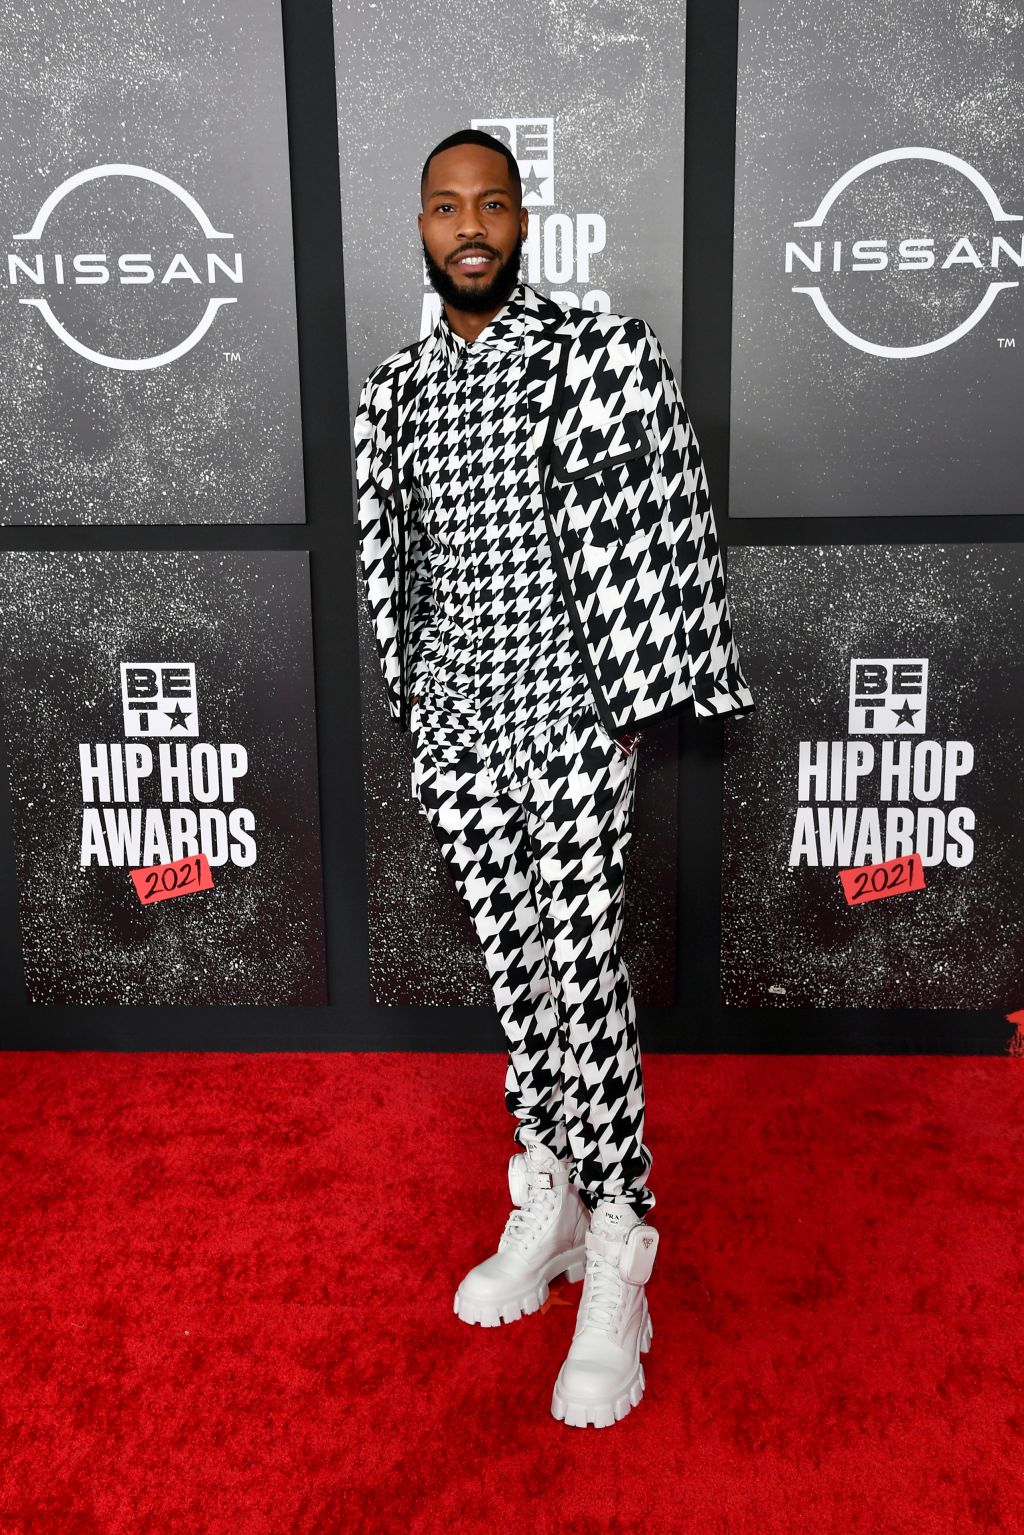 Photos: BET Hip Hop Awards 2021 red carpet looks